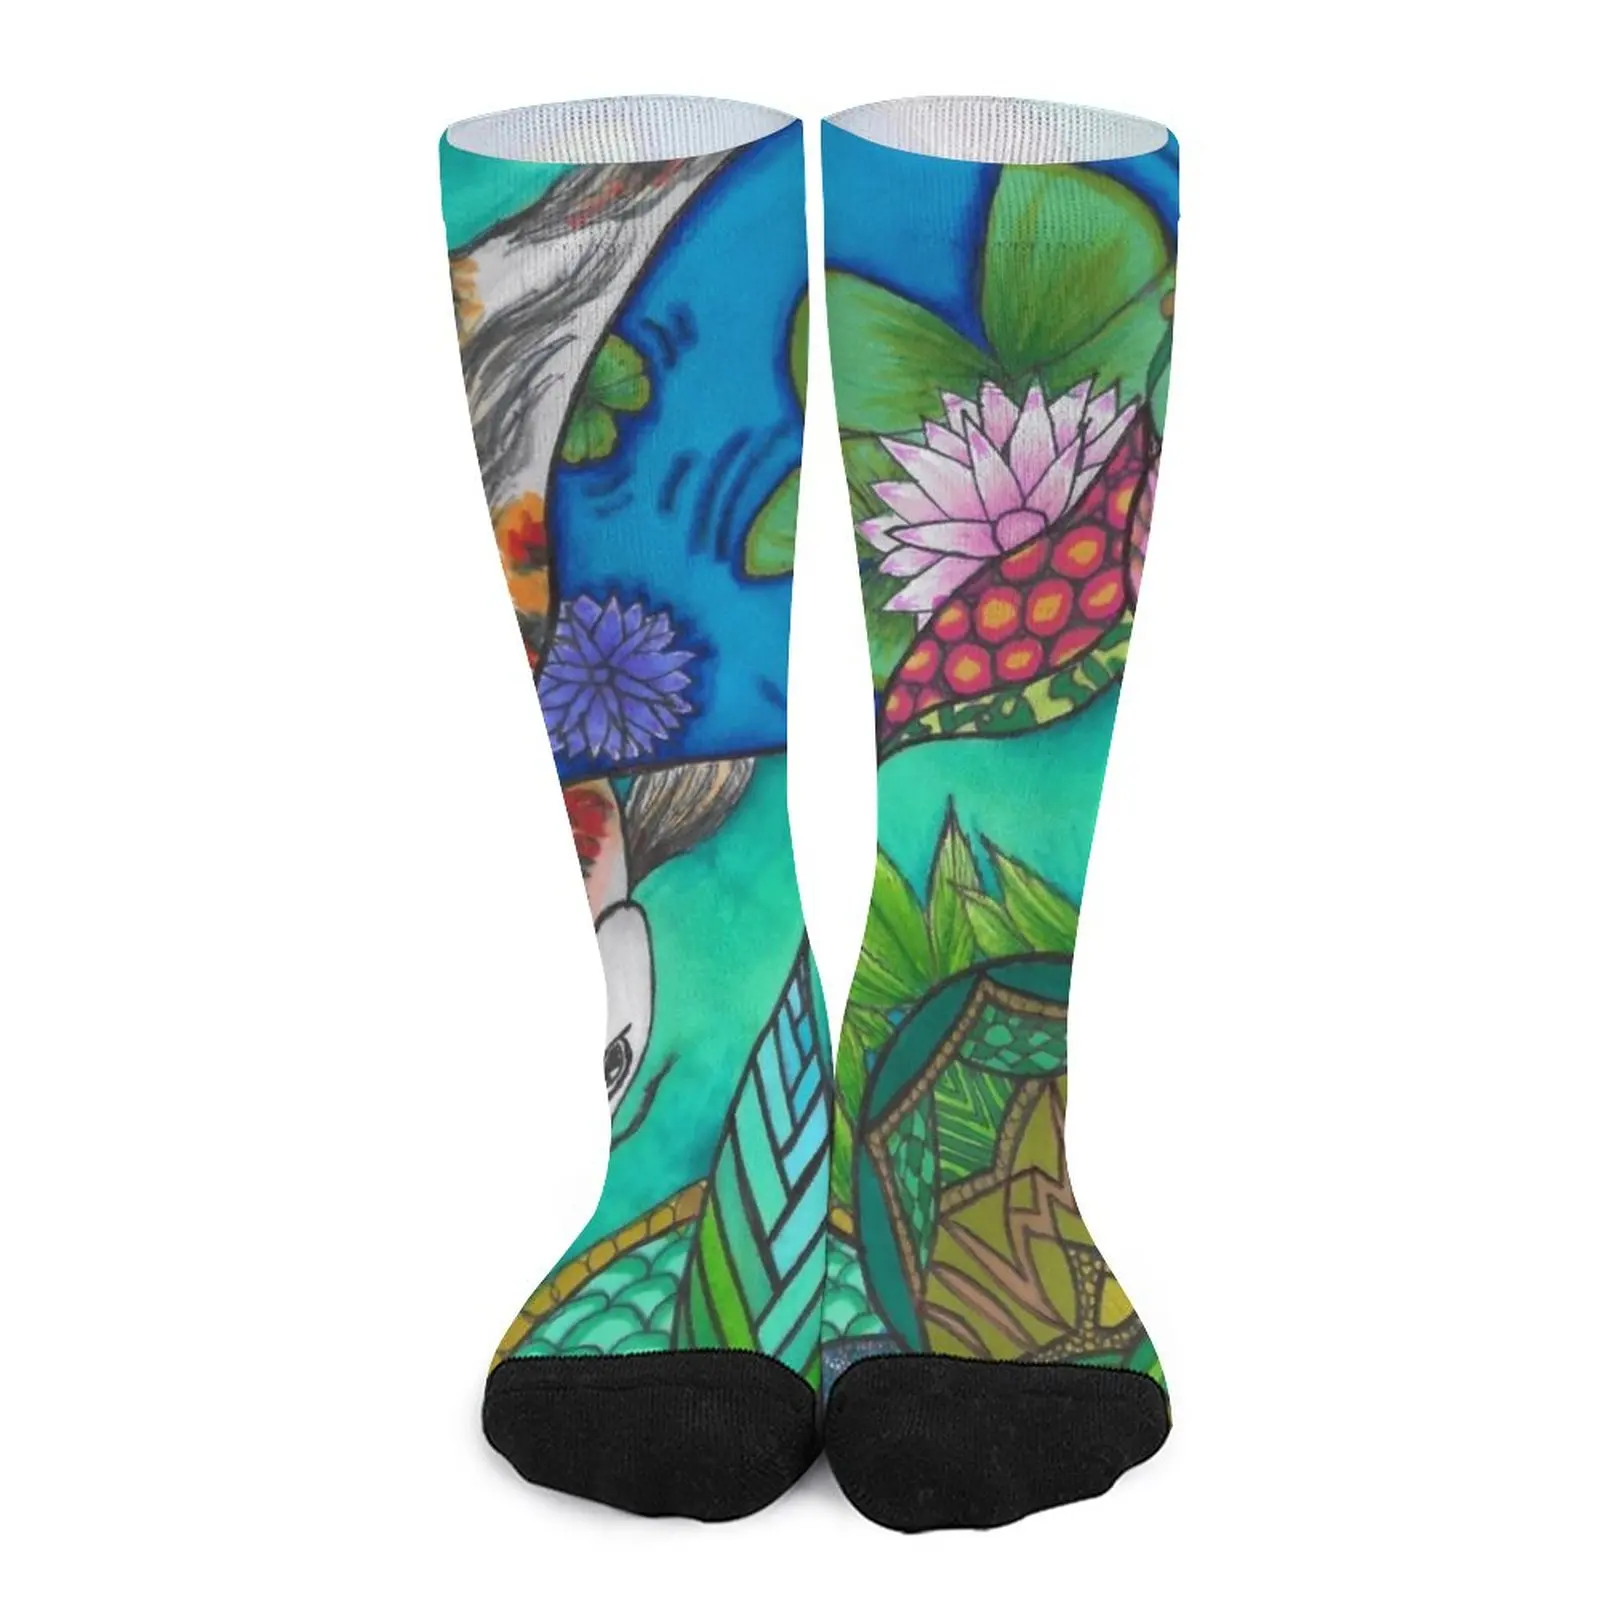 Koi Design Socks stockings for men Wholesale socks for men new in Men's socks new wholesale